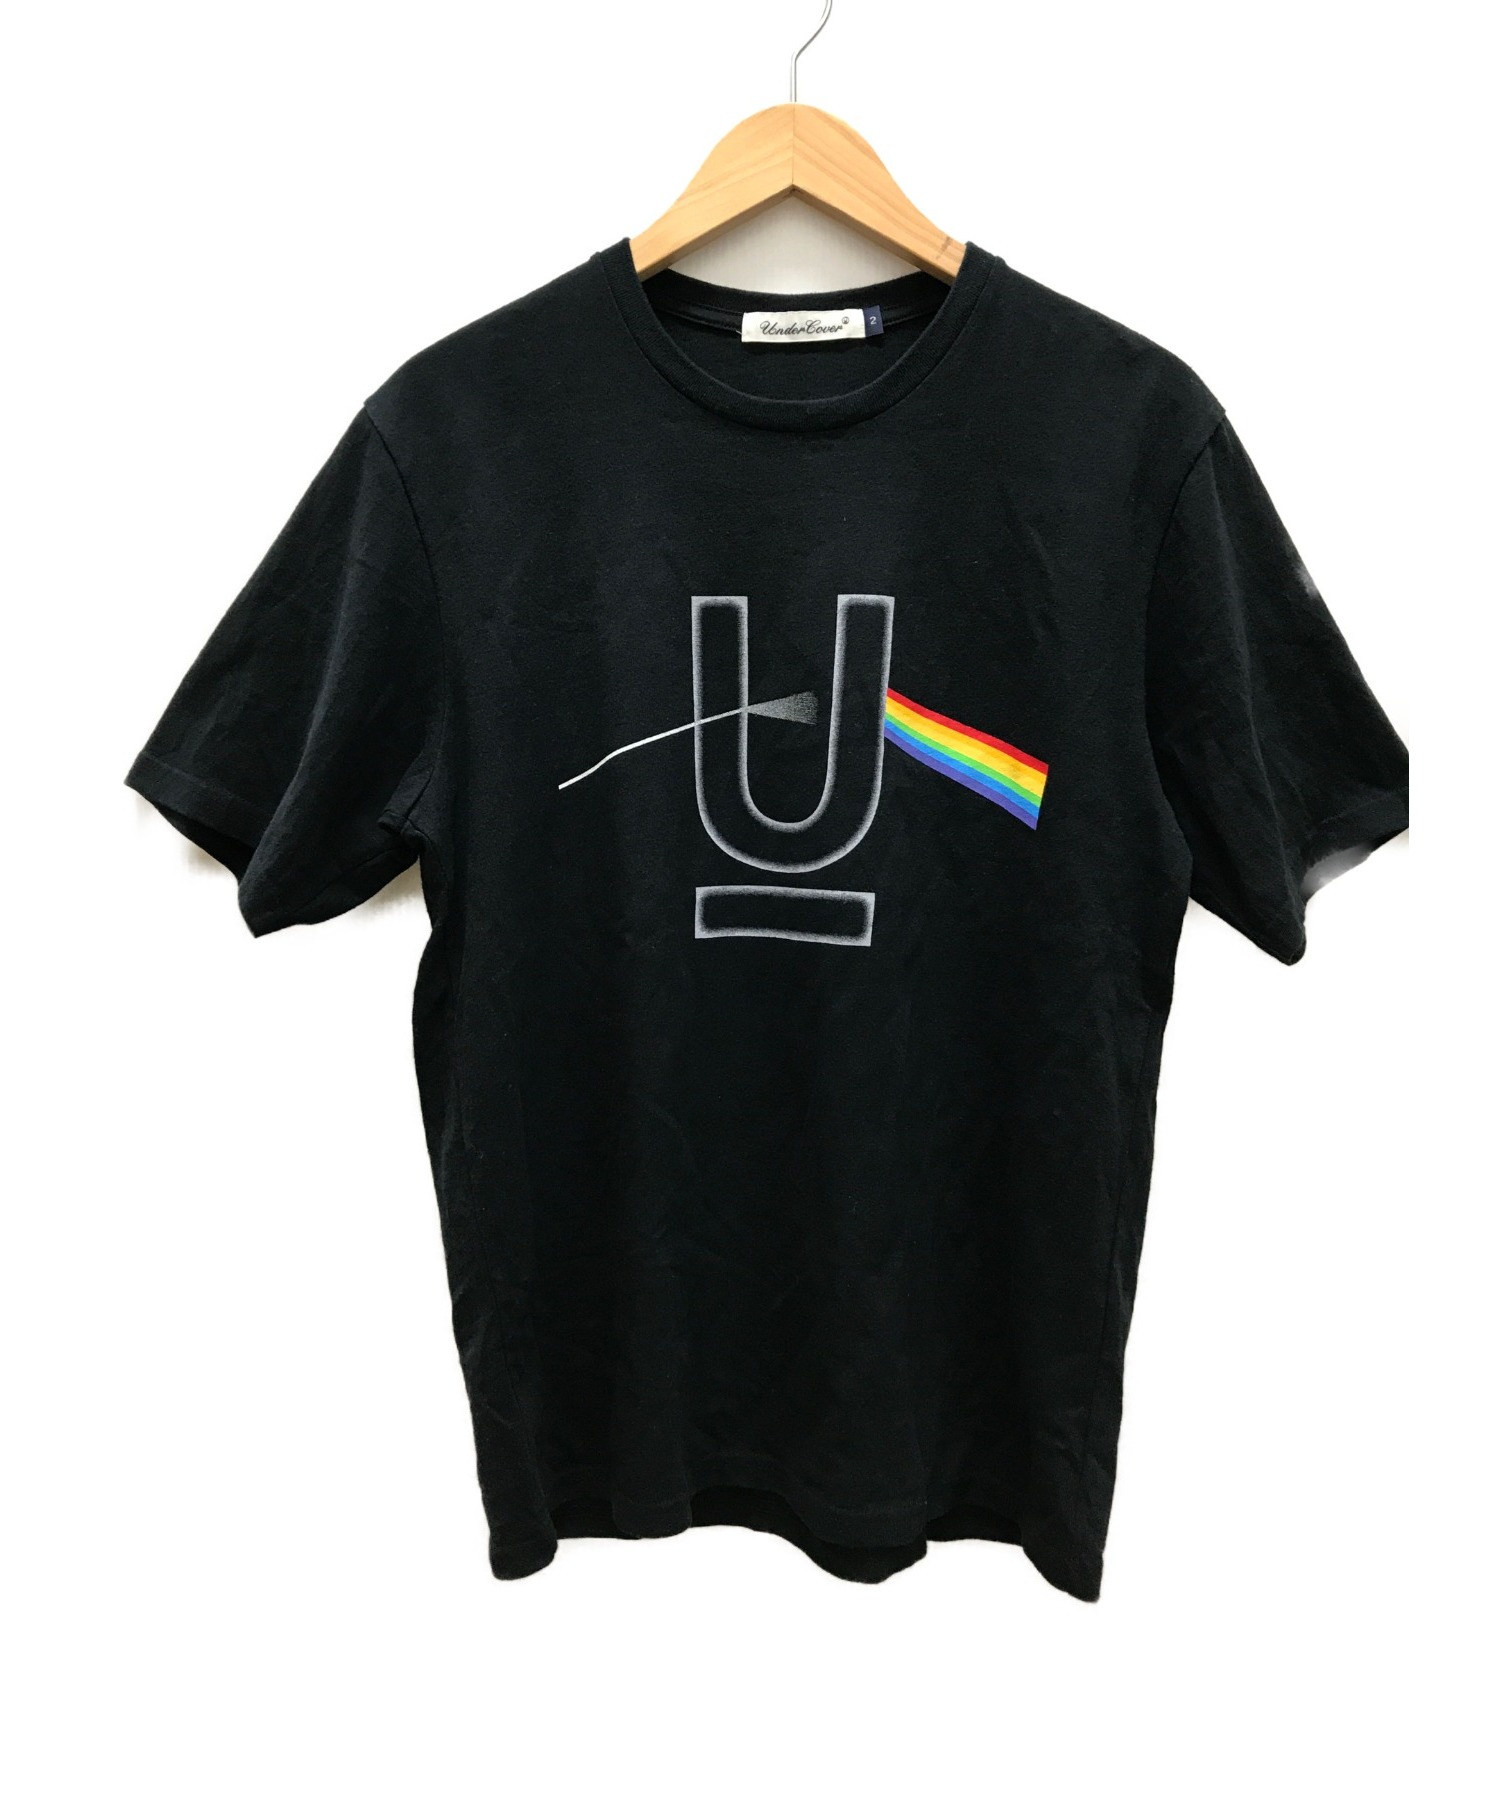 UNDERCOVER (アンダーカバー) UロゴレインボーTシャツ ブラック サイズ:2